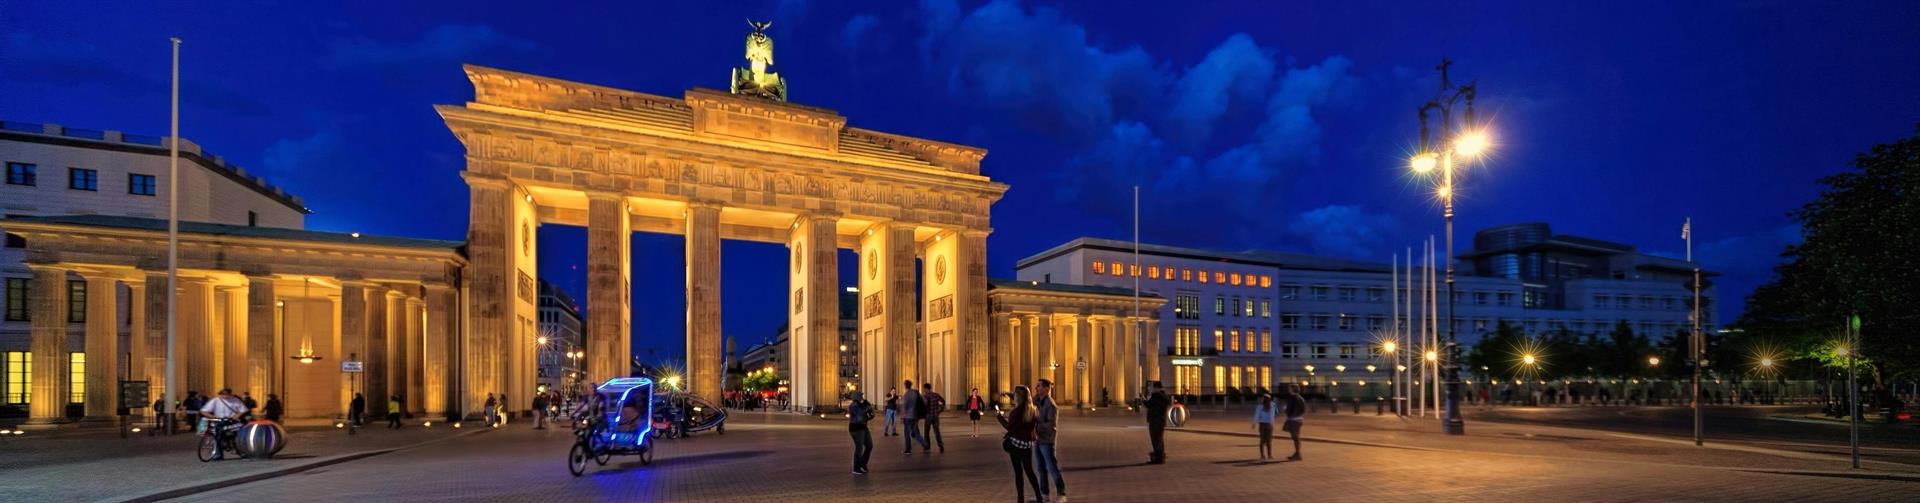 טיול מאורגן לברלין בשילוב דרזדן | 7 ימים